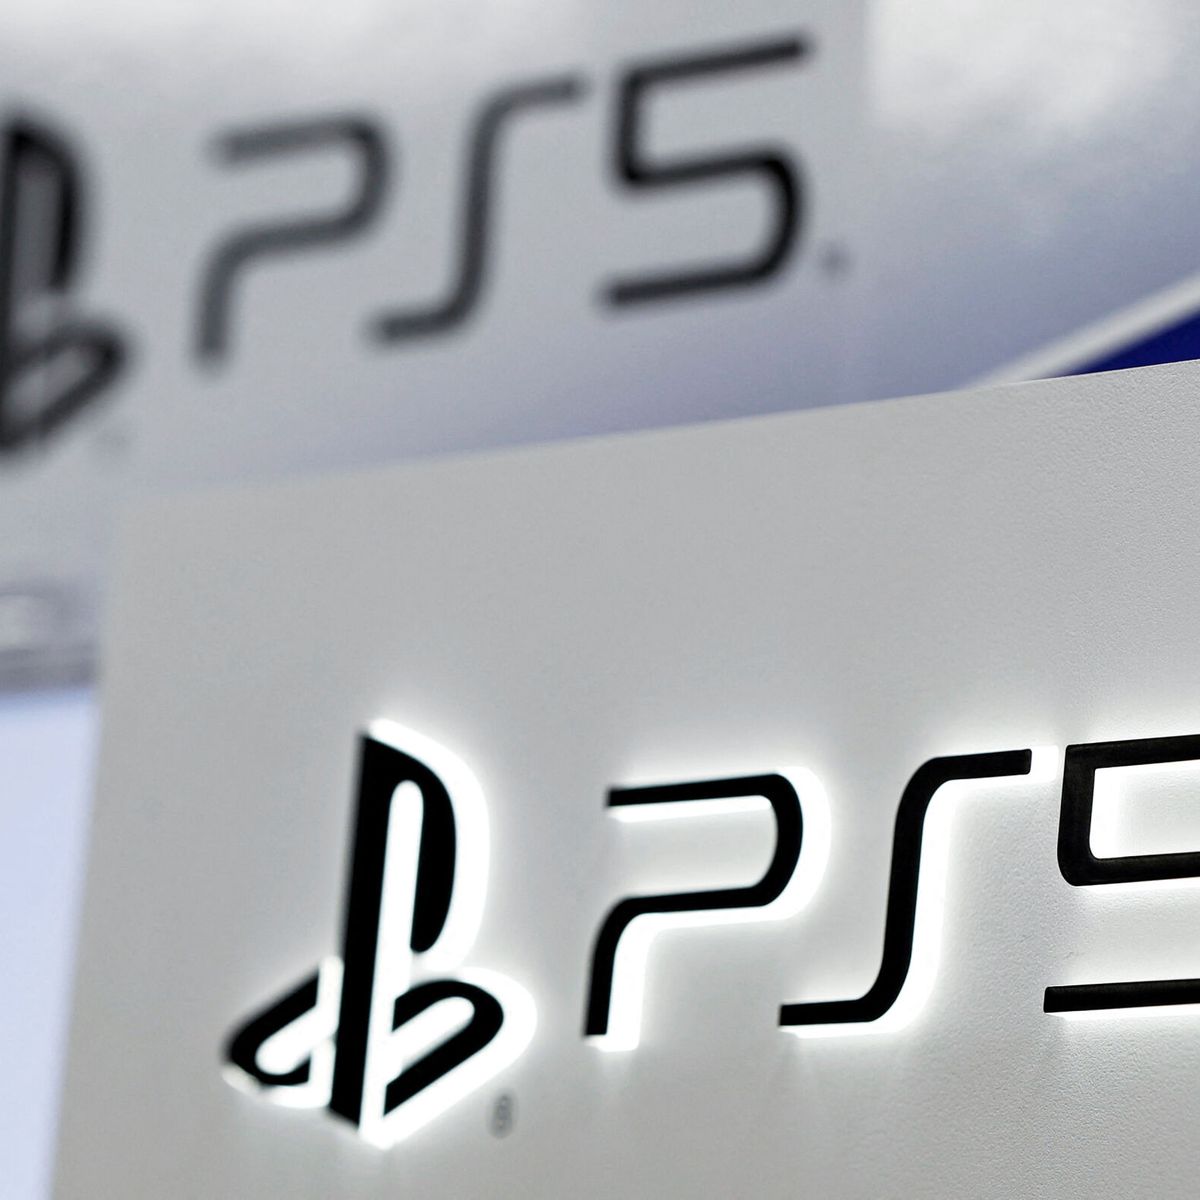 Sony podía haber reinventado la PlayStation. Lo que va a conseguir es  evitar divorcios